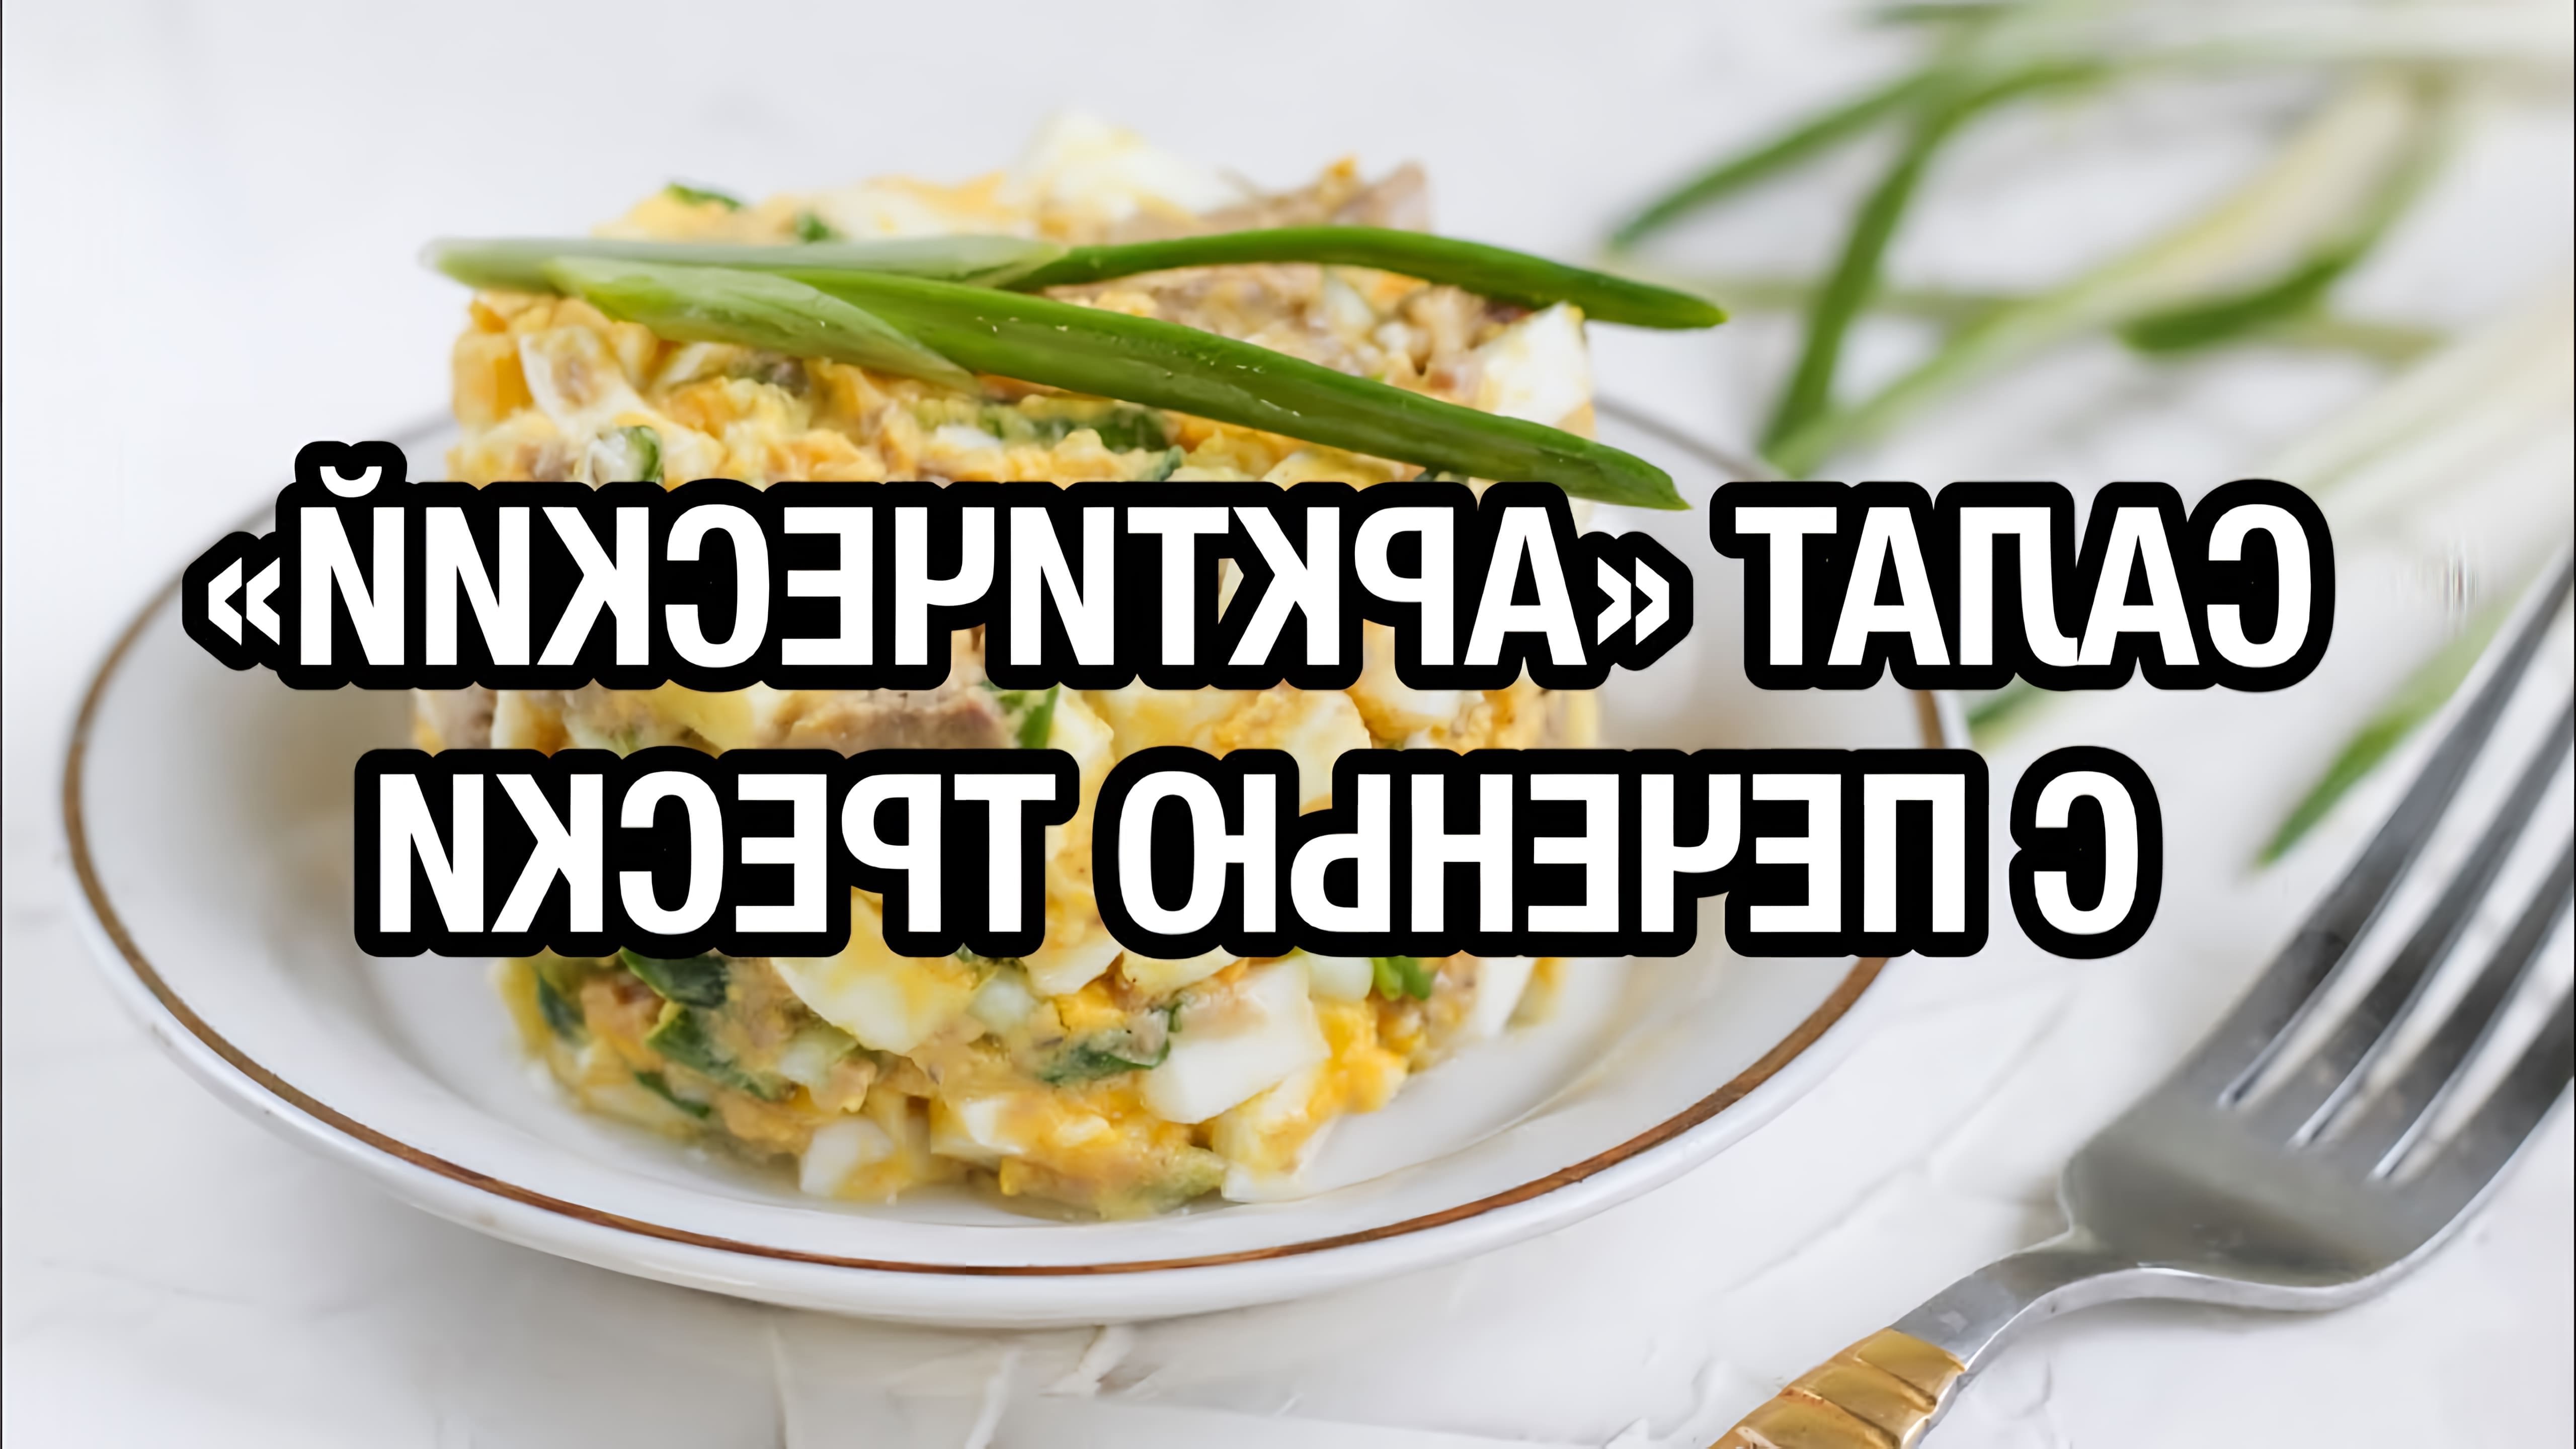 В этом видео демонстрируется рецепт приготовления вкуснейшего зимнего салата с печенью трески